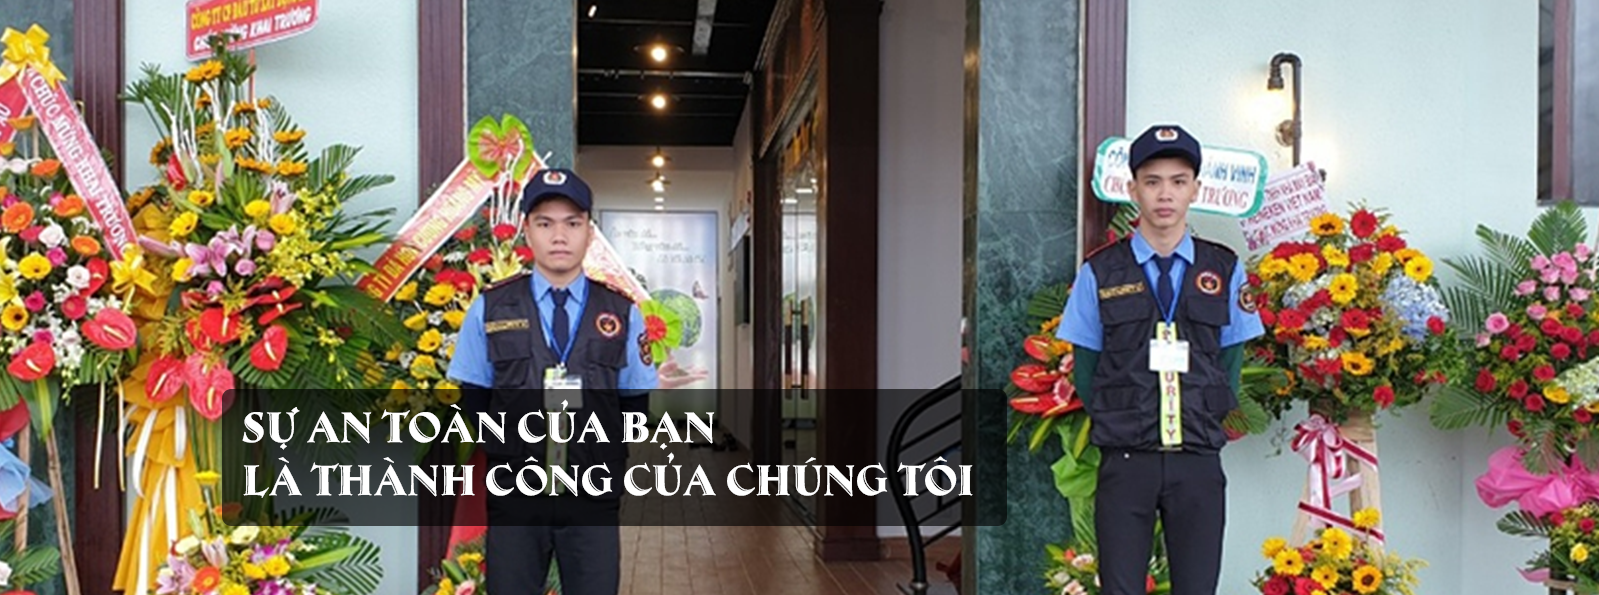 Những điều cần biết khi thuê dịch vụ bảo vệ sự kiện tại Đà Nẵng